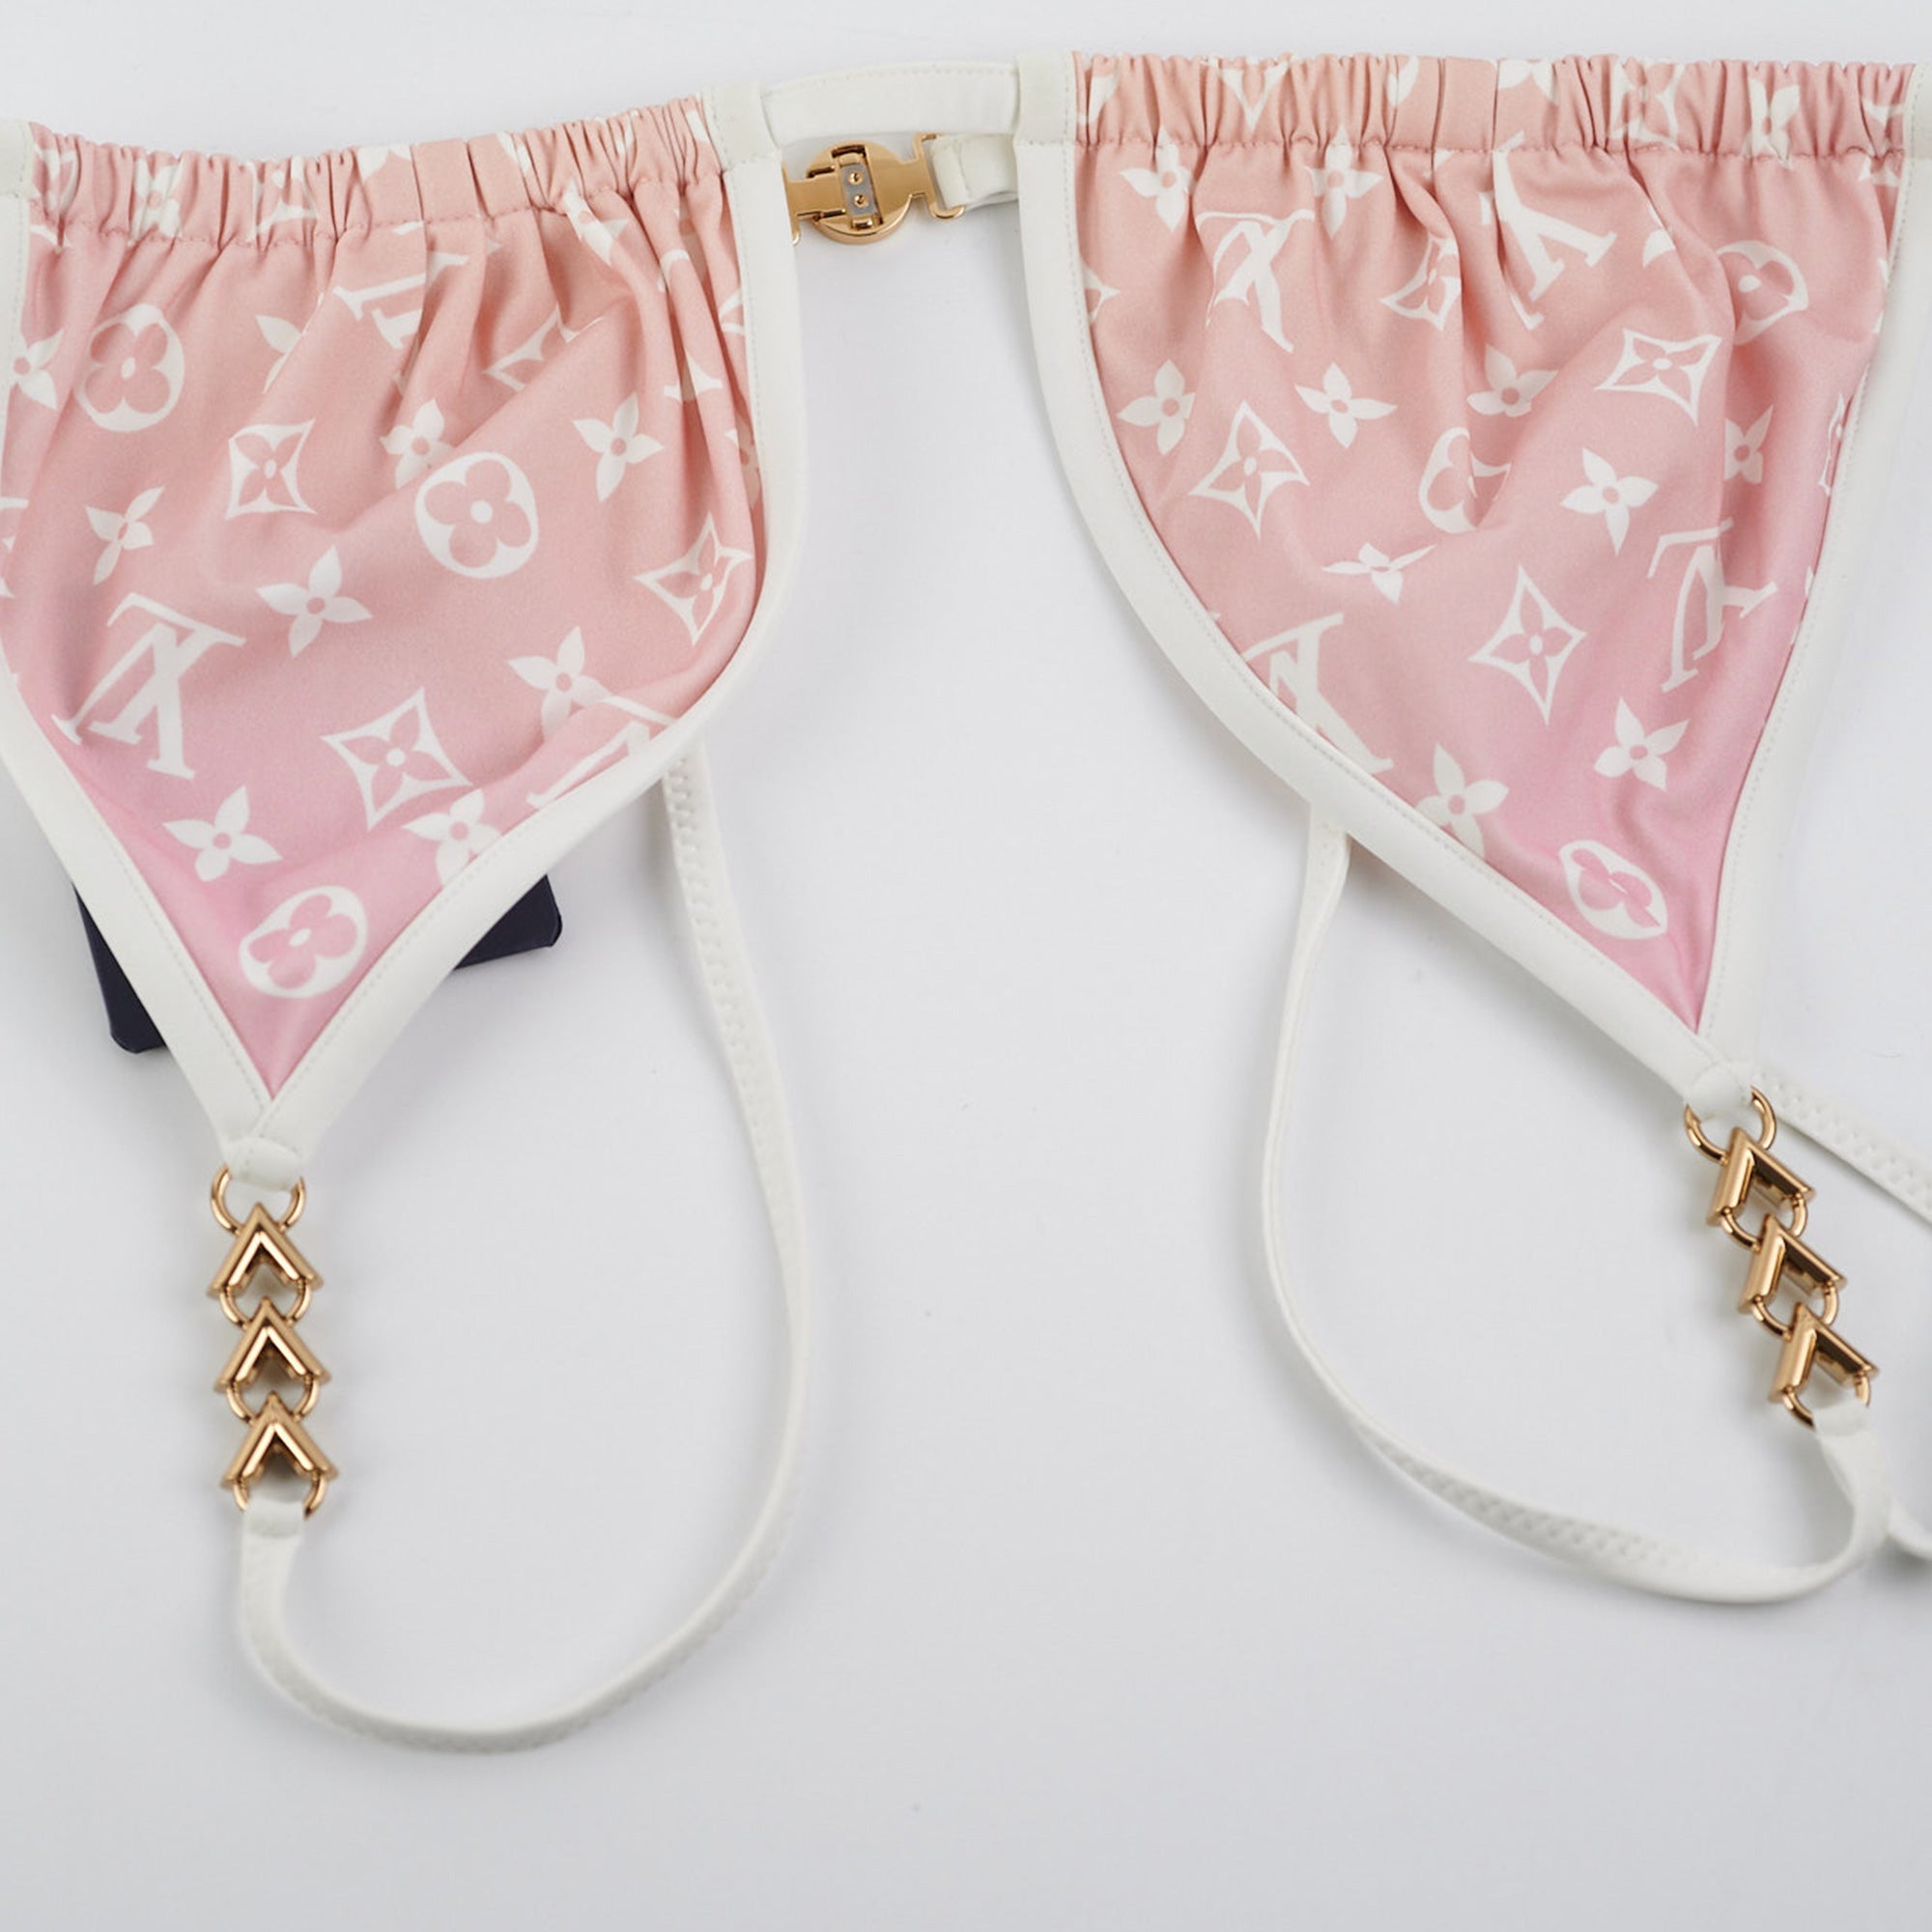 Louis Vuitton Star Print Bikini Bottoms